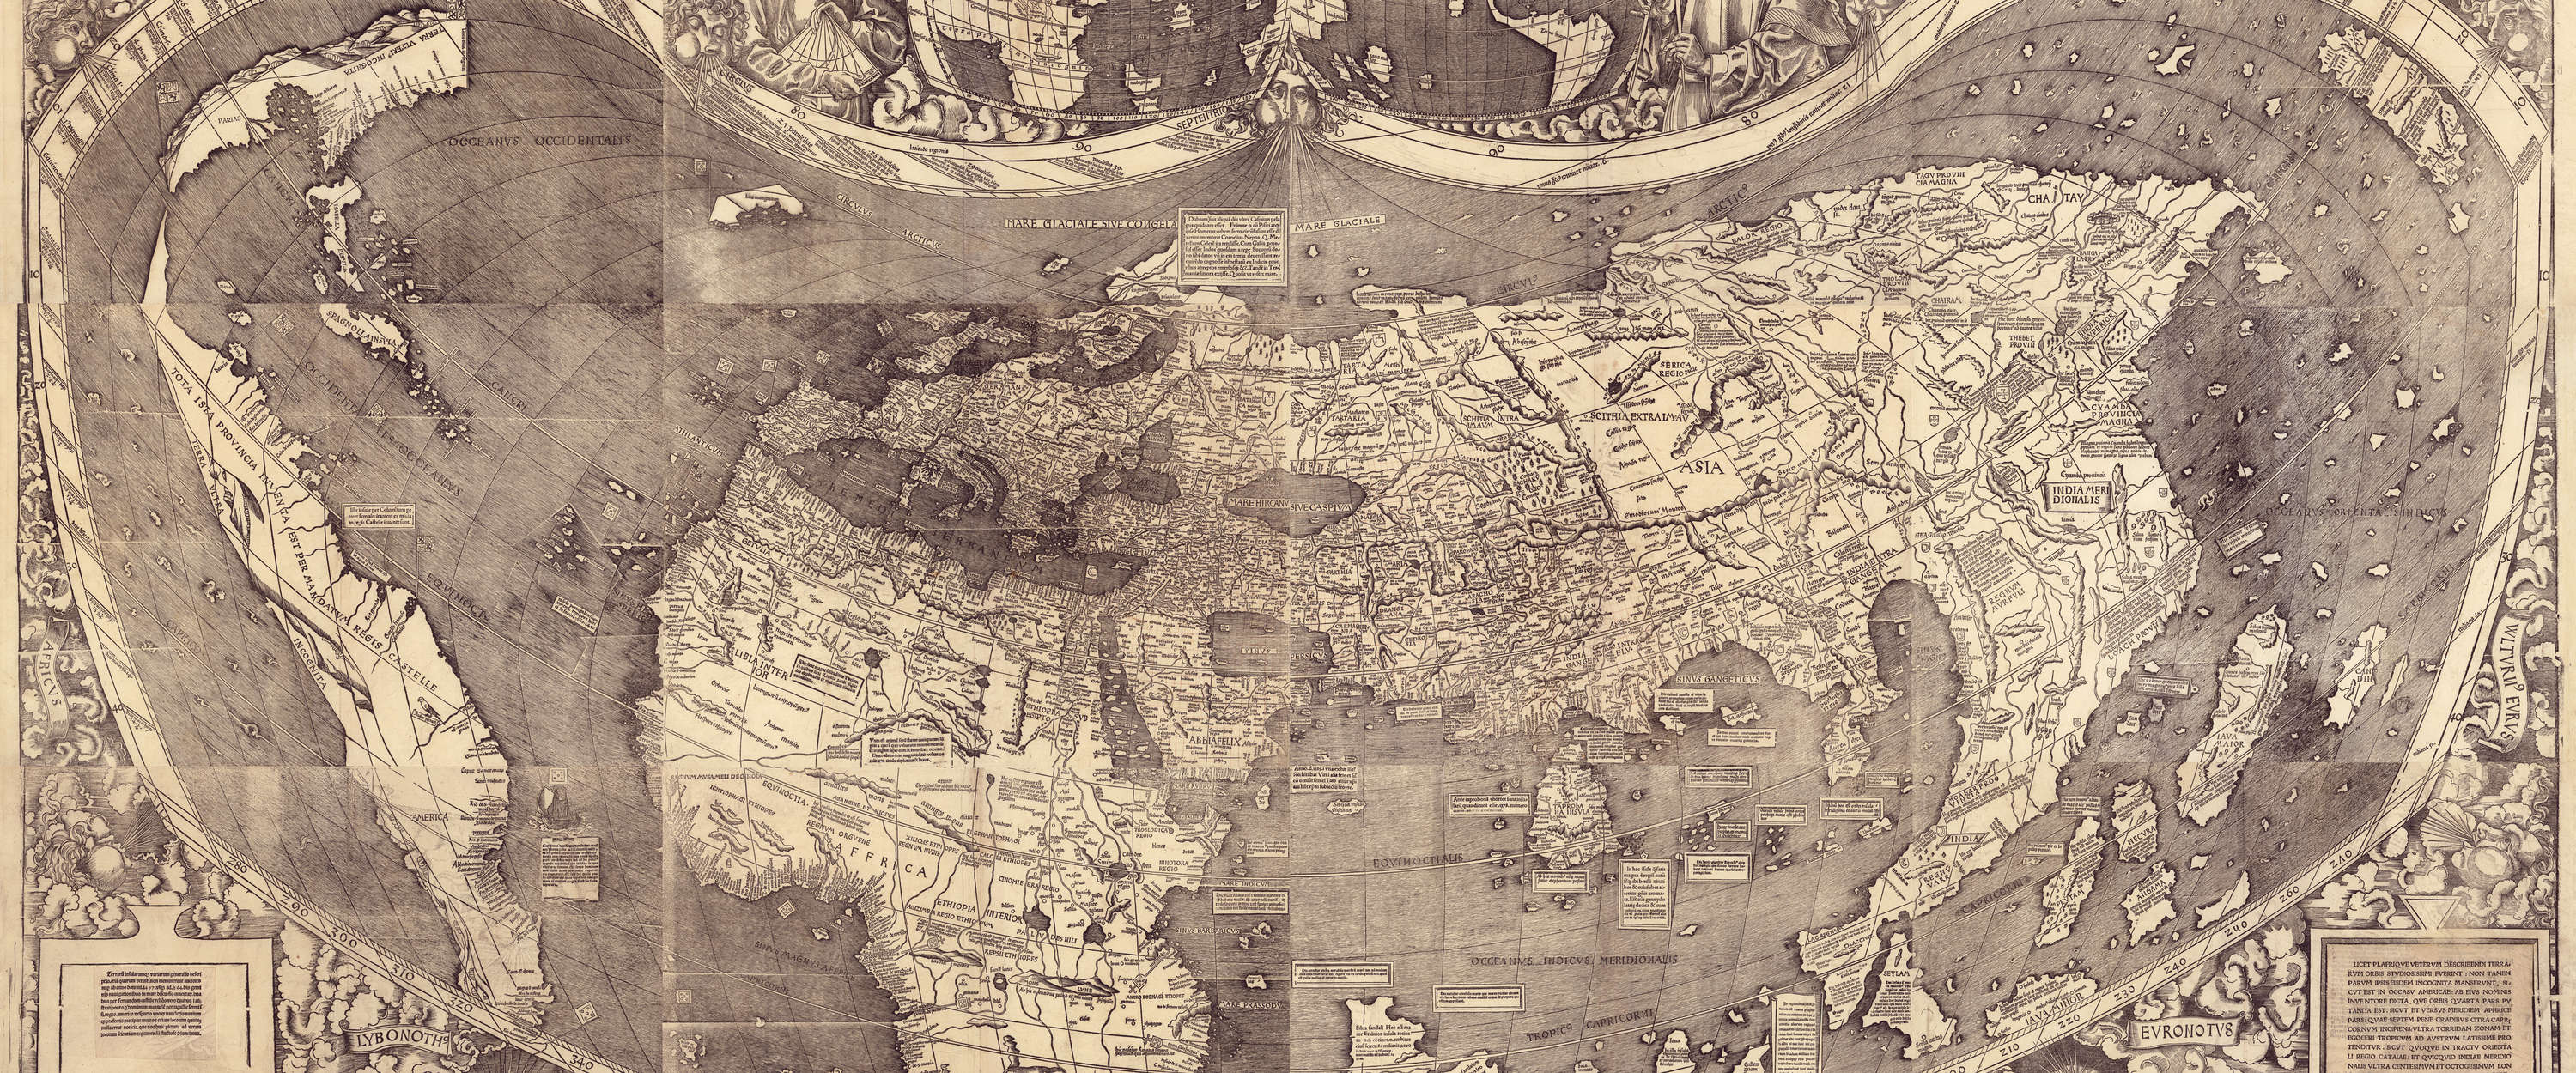             Papel Pintado Mapa del Mundo Vintage en estilo histórico y aspecto sepia
        